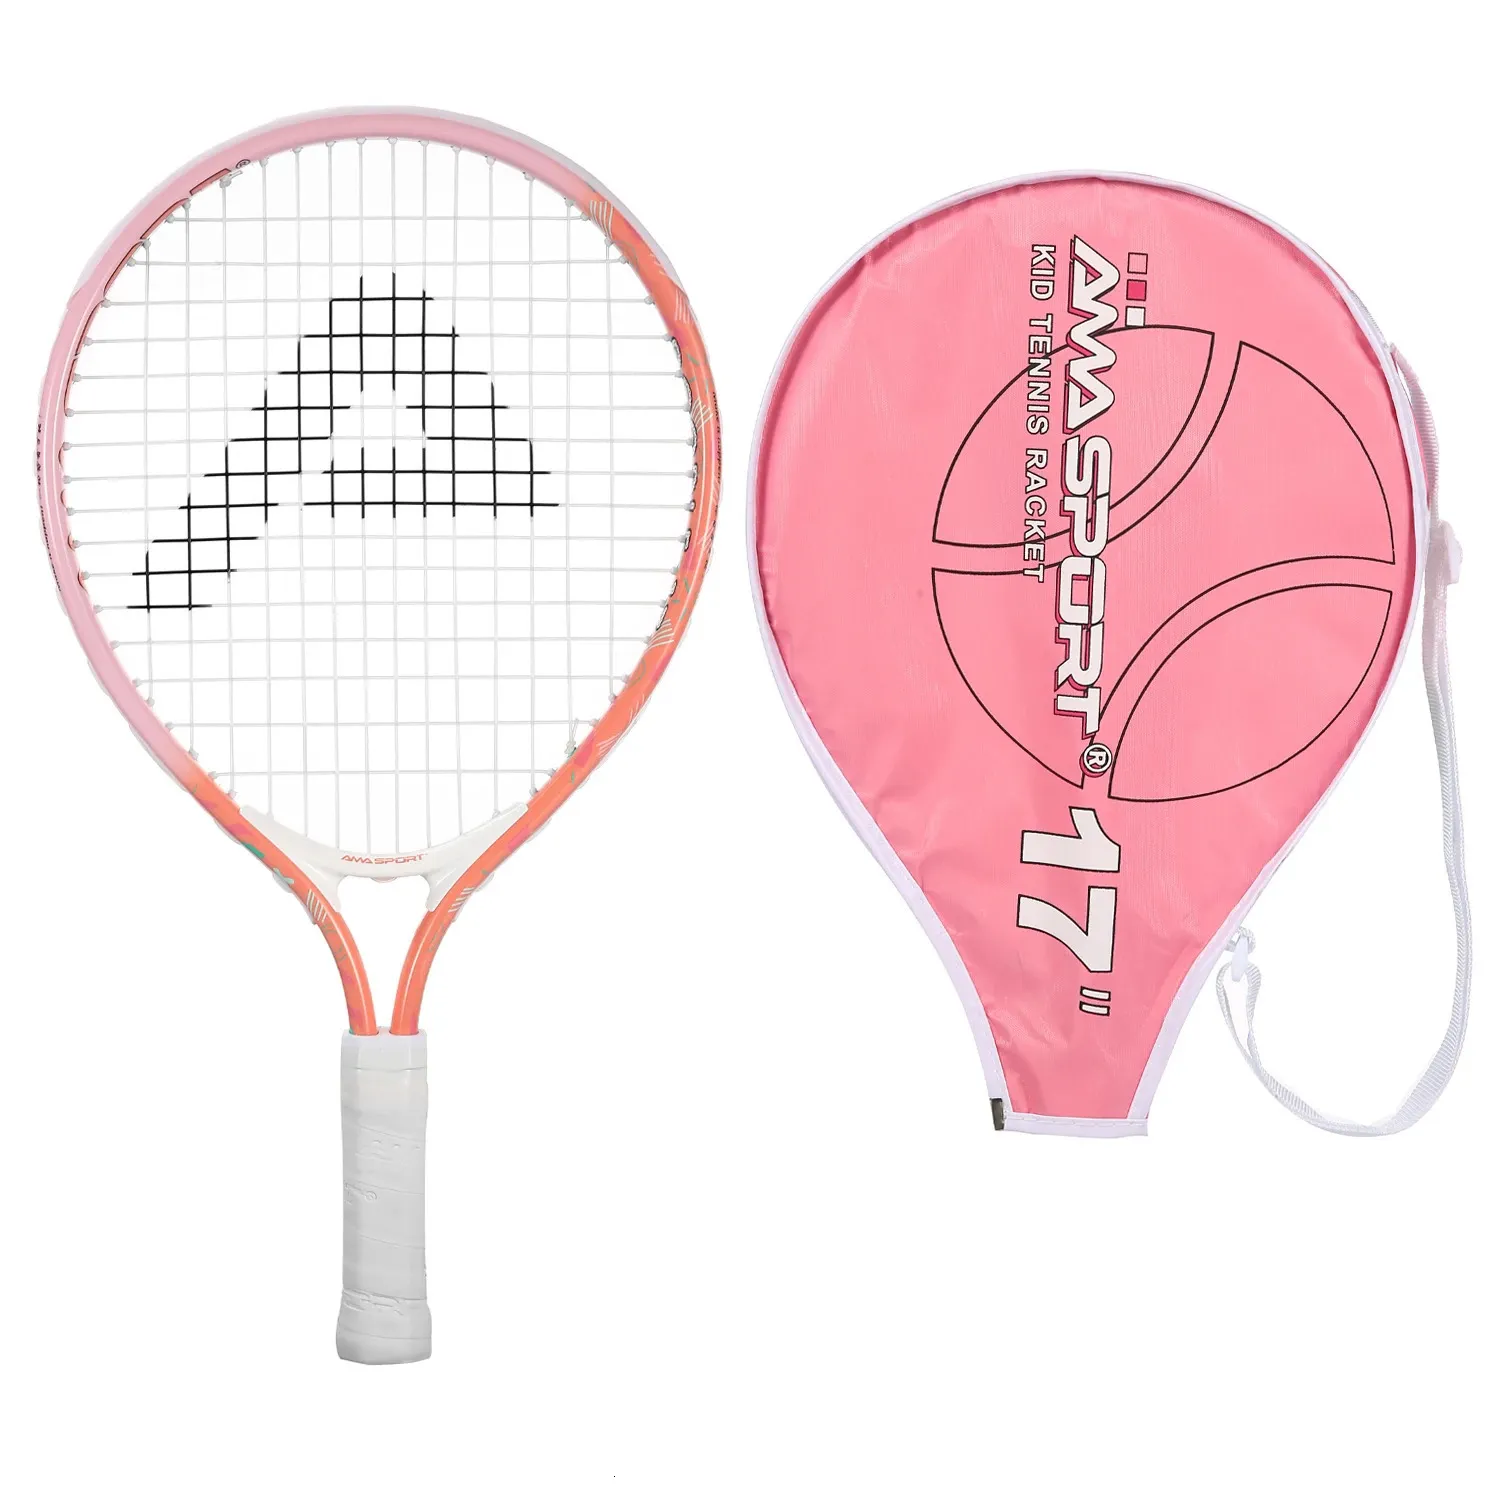 Raquete de tênis infantil AMASPORT Premium 1725 leve e durável para iniciantes com 212 anos de idade 240223